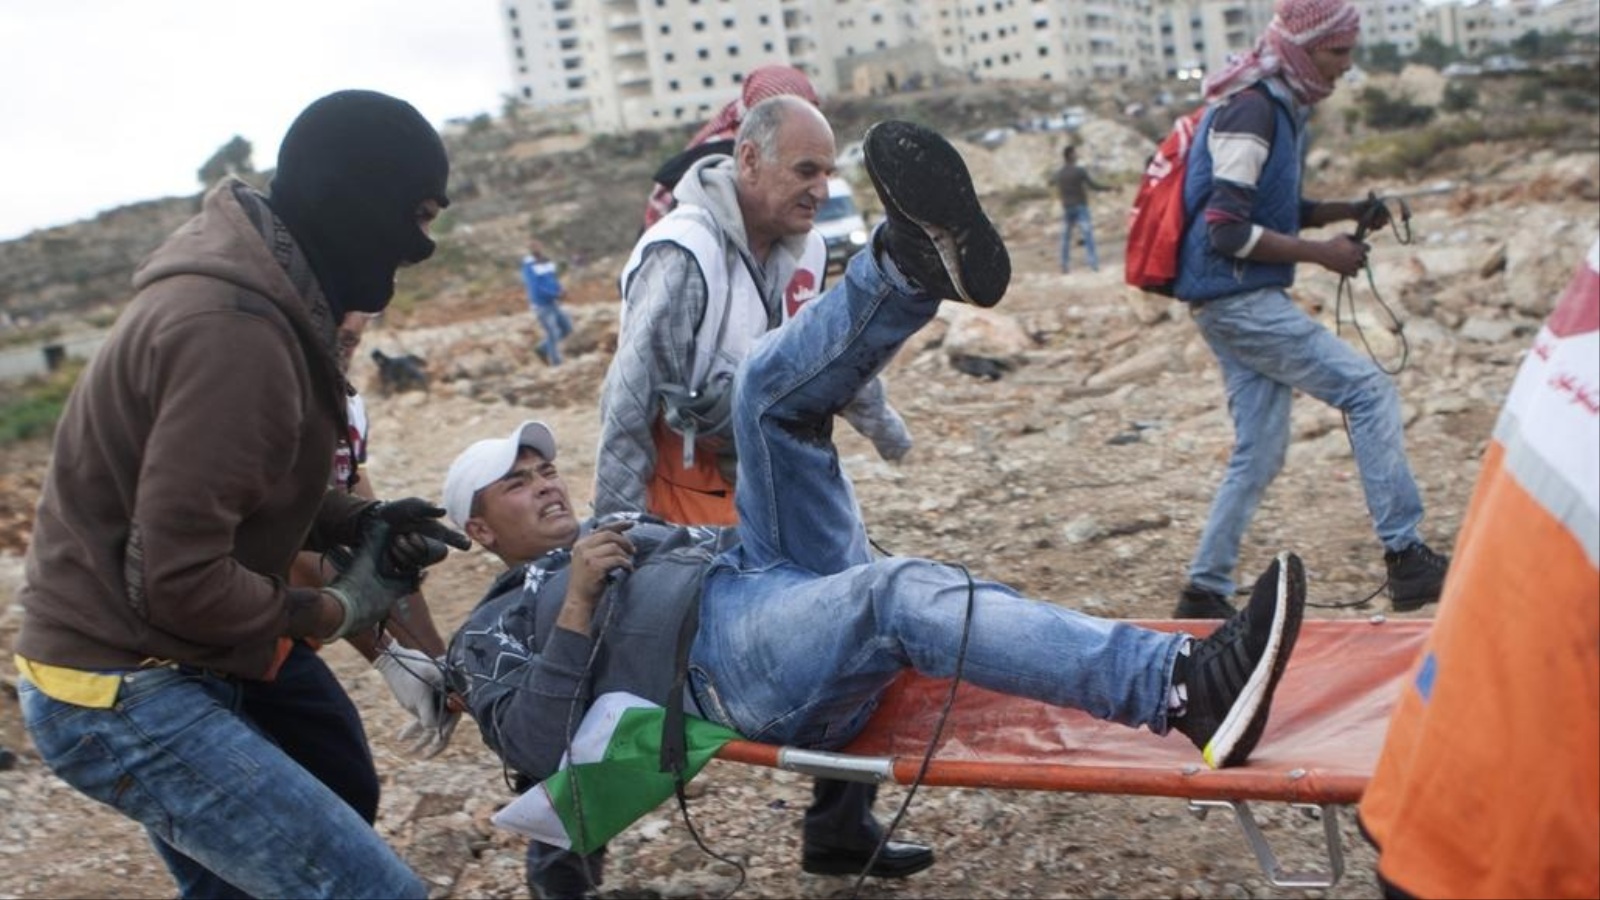 عشرات الفلسطينيين أصيبوا بالرصاص وحالات اختناق خلال مواجهات بالضفة الغربية اليوم الثلاثاء (الأناضول)